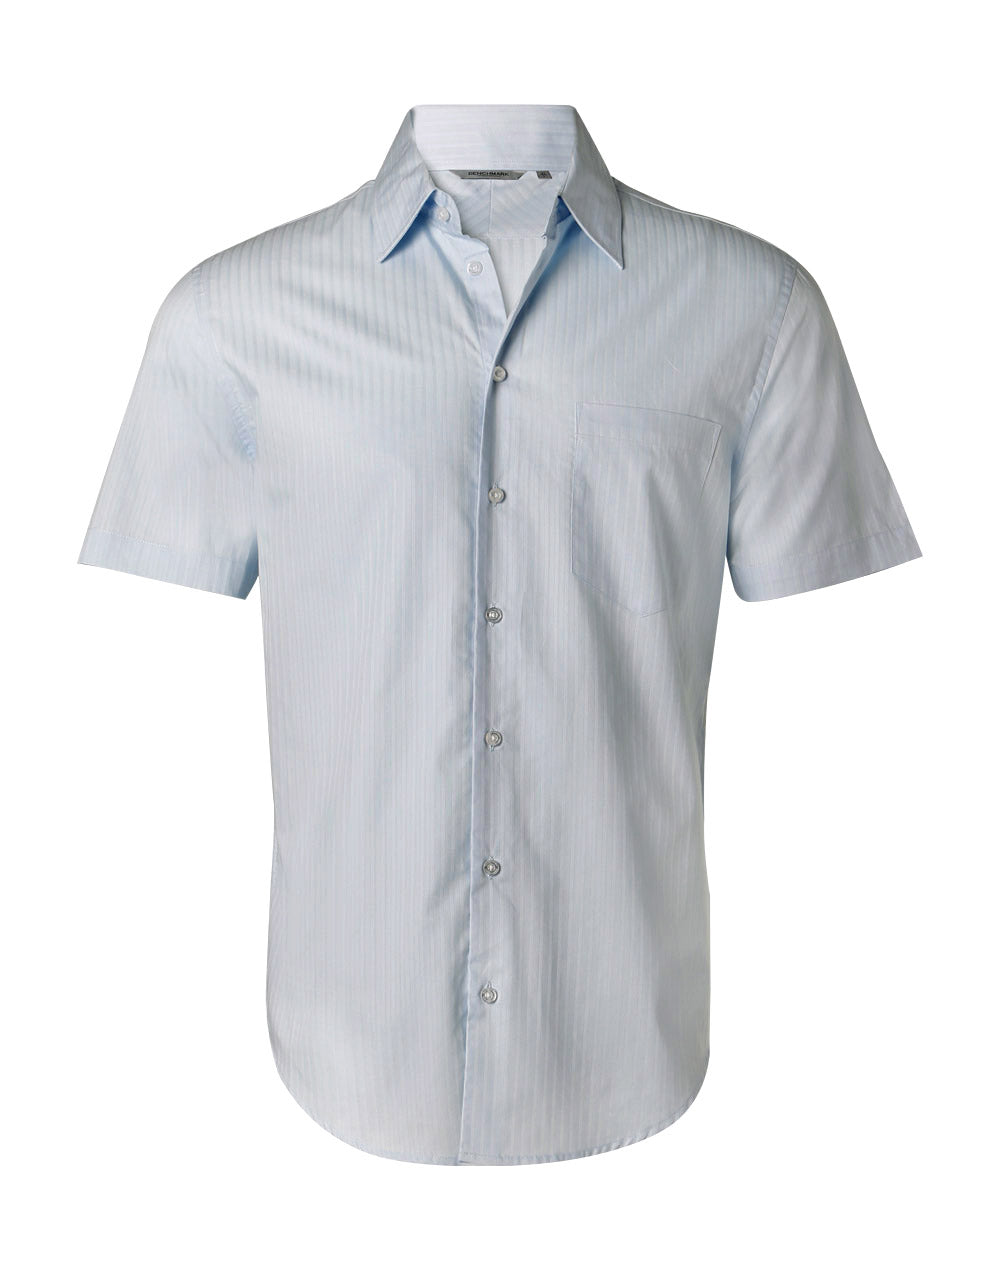 Benchmark M7100S Men's Self Stripe Short Sleeve Shirt